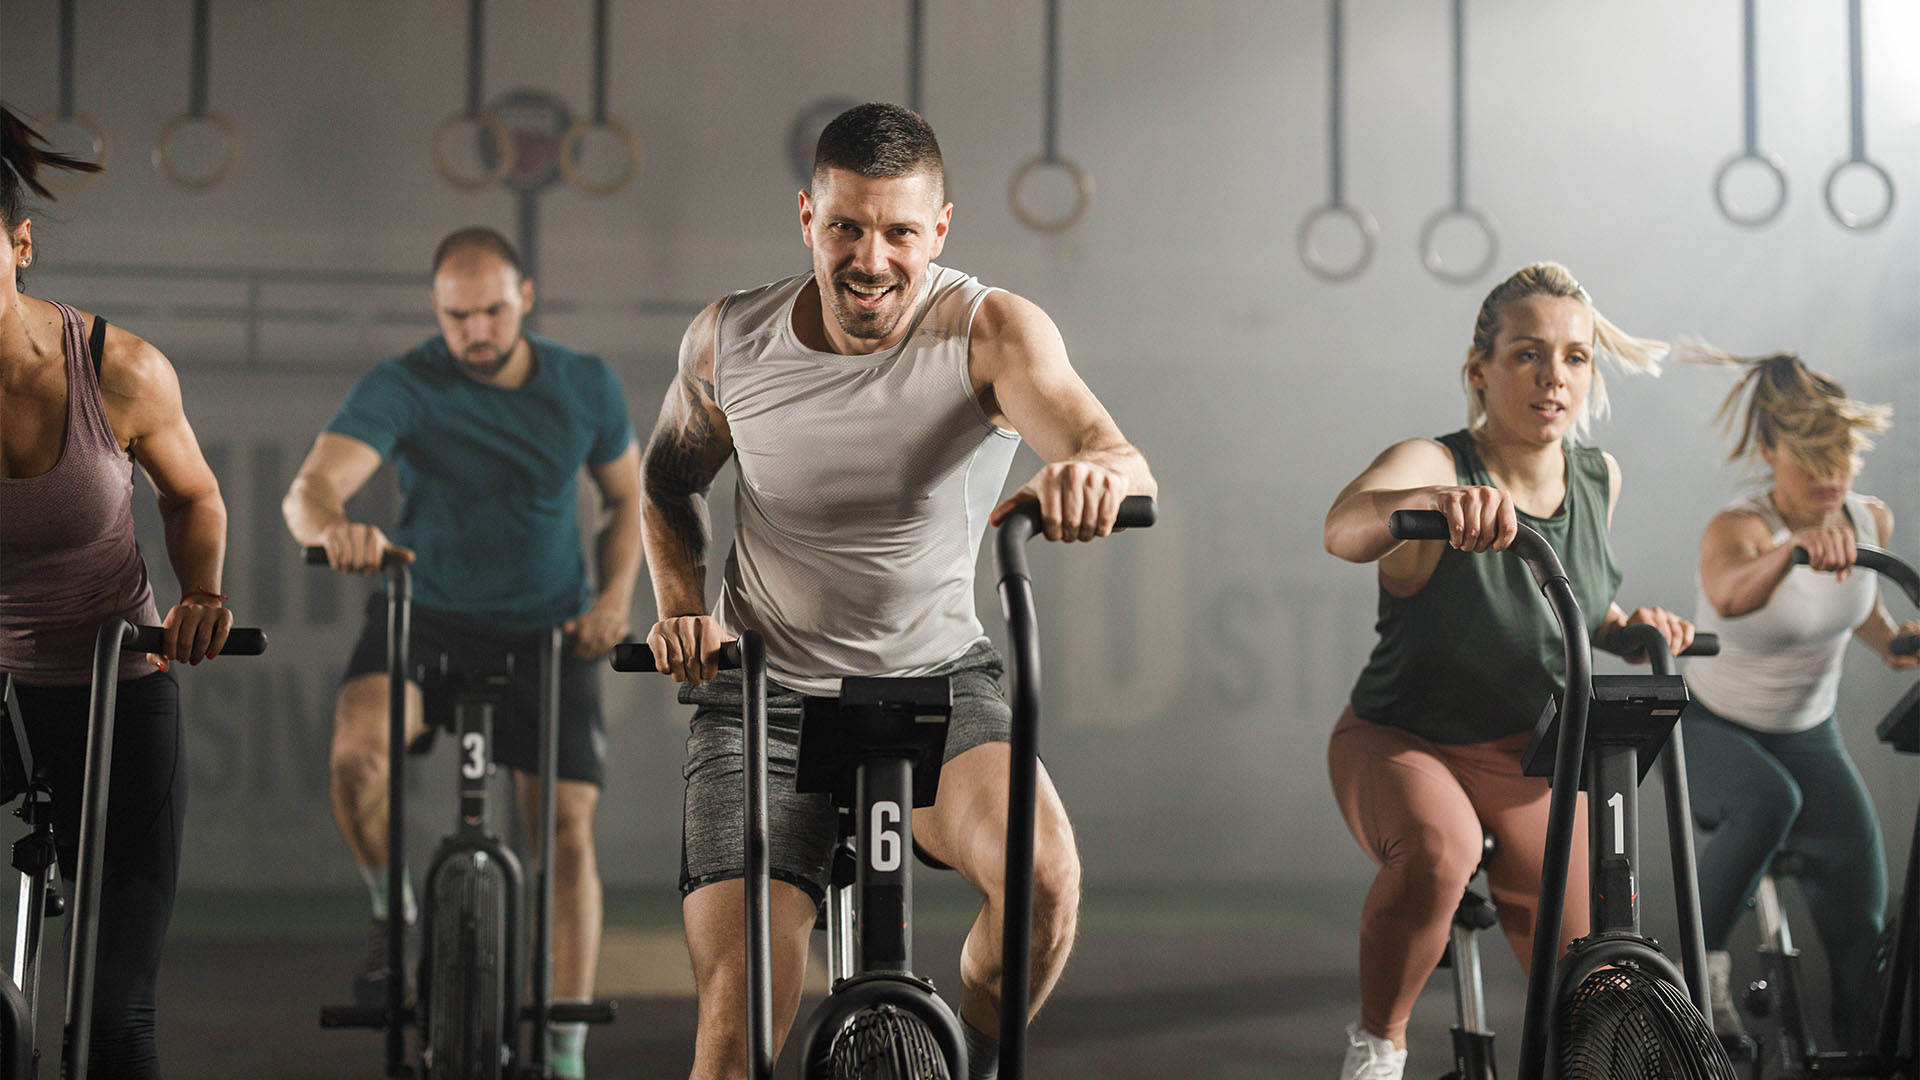 "La grasa corporal obstinada no desaparece, las personas deberían considerar  agregar entrenamiento de intervalos de alta intensidad o HIIT a su rutina de ejercicios” (Getty)